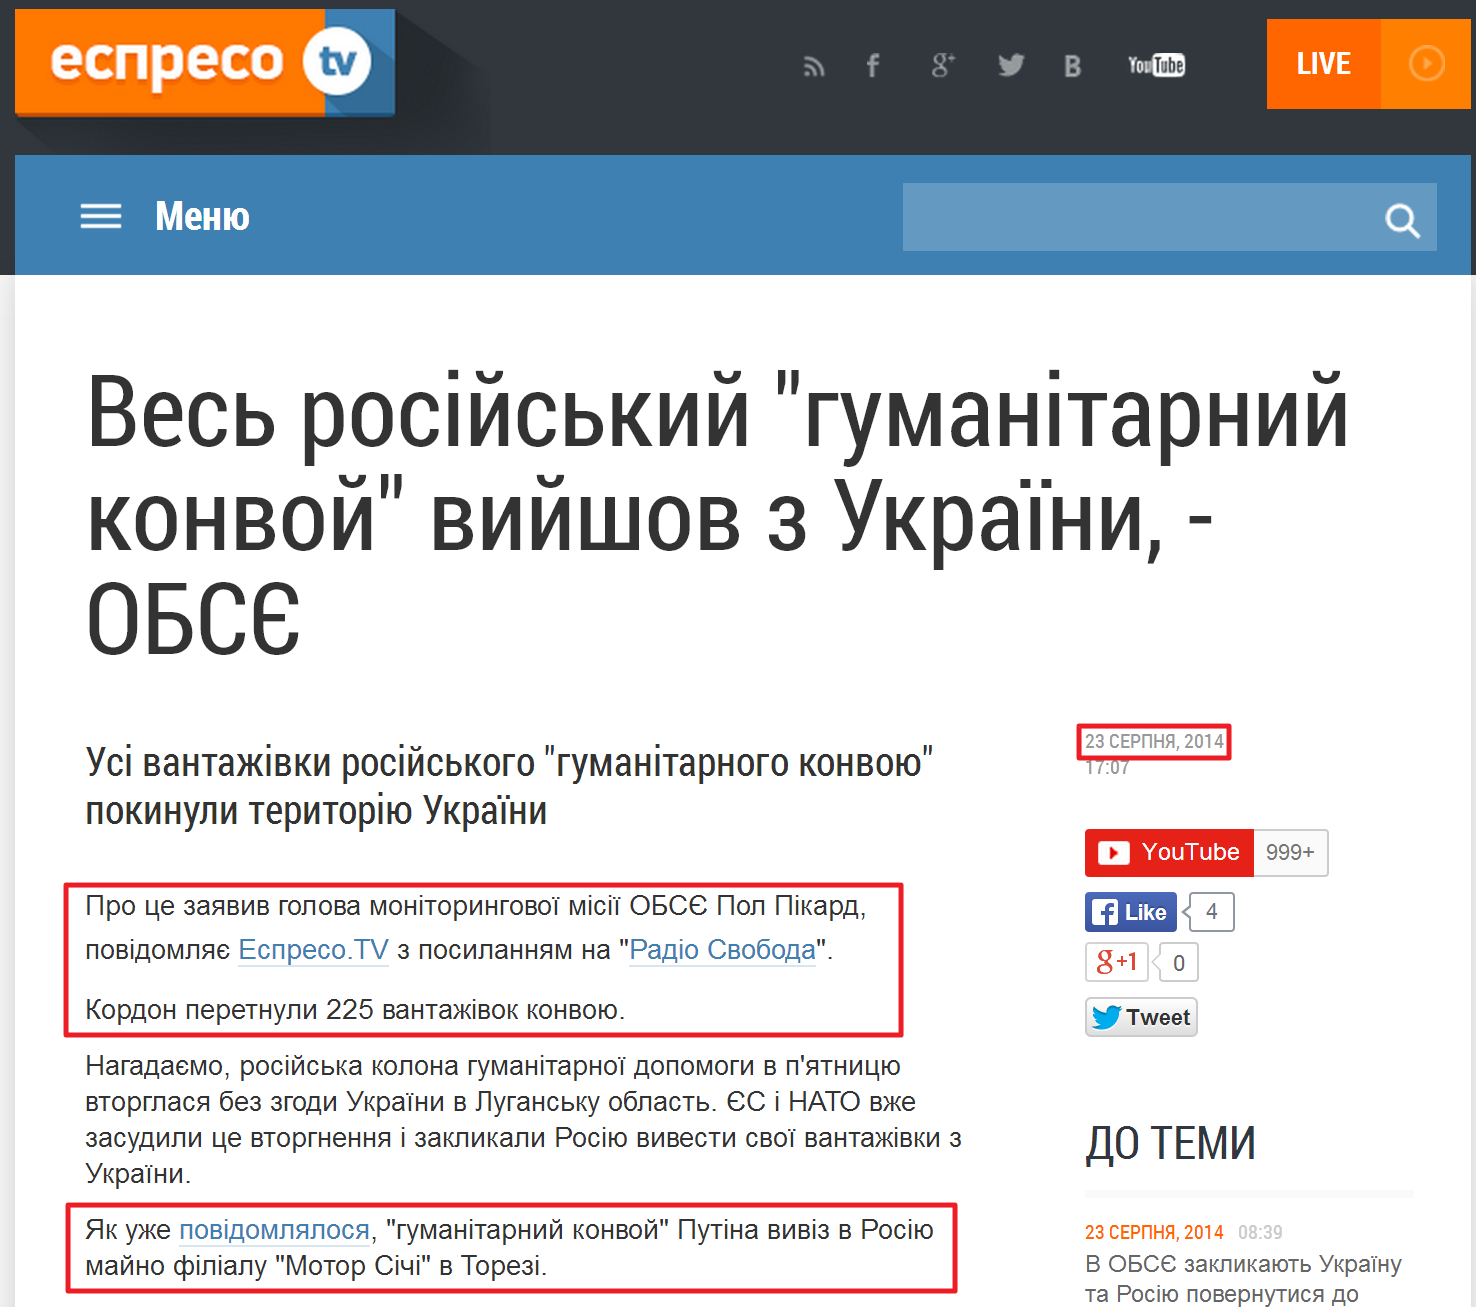 http://espreso.tv/news/2014/08/23/ves_rosiyskyy_humanitarnyy_konvoy_vyyshov_z_ukrayiny___obsye